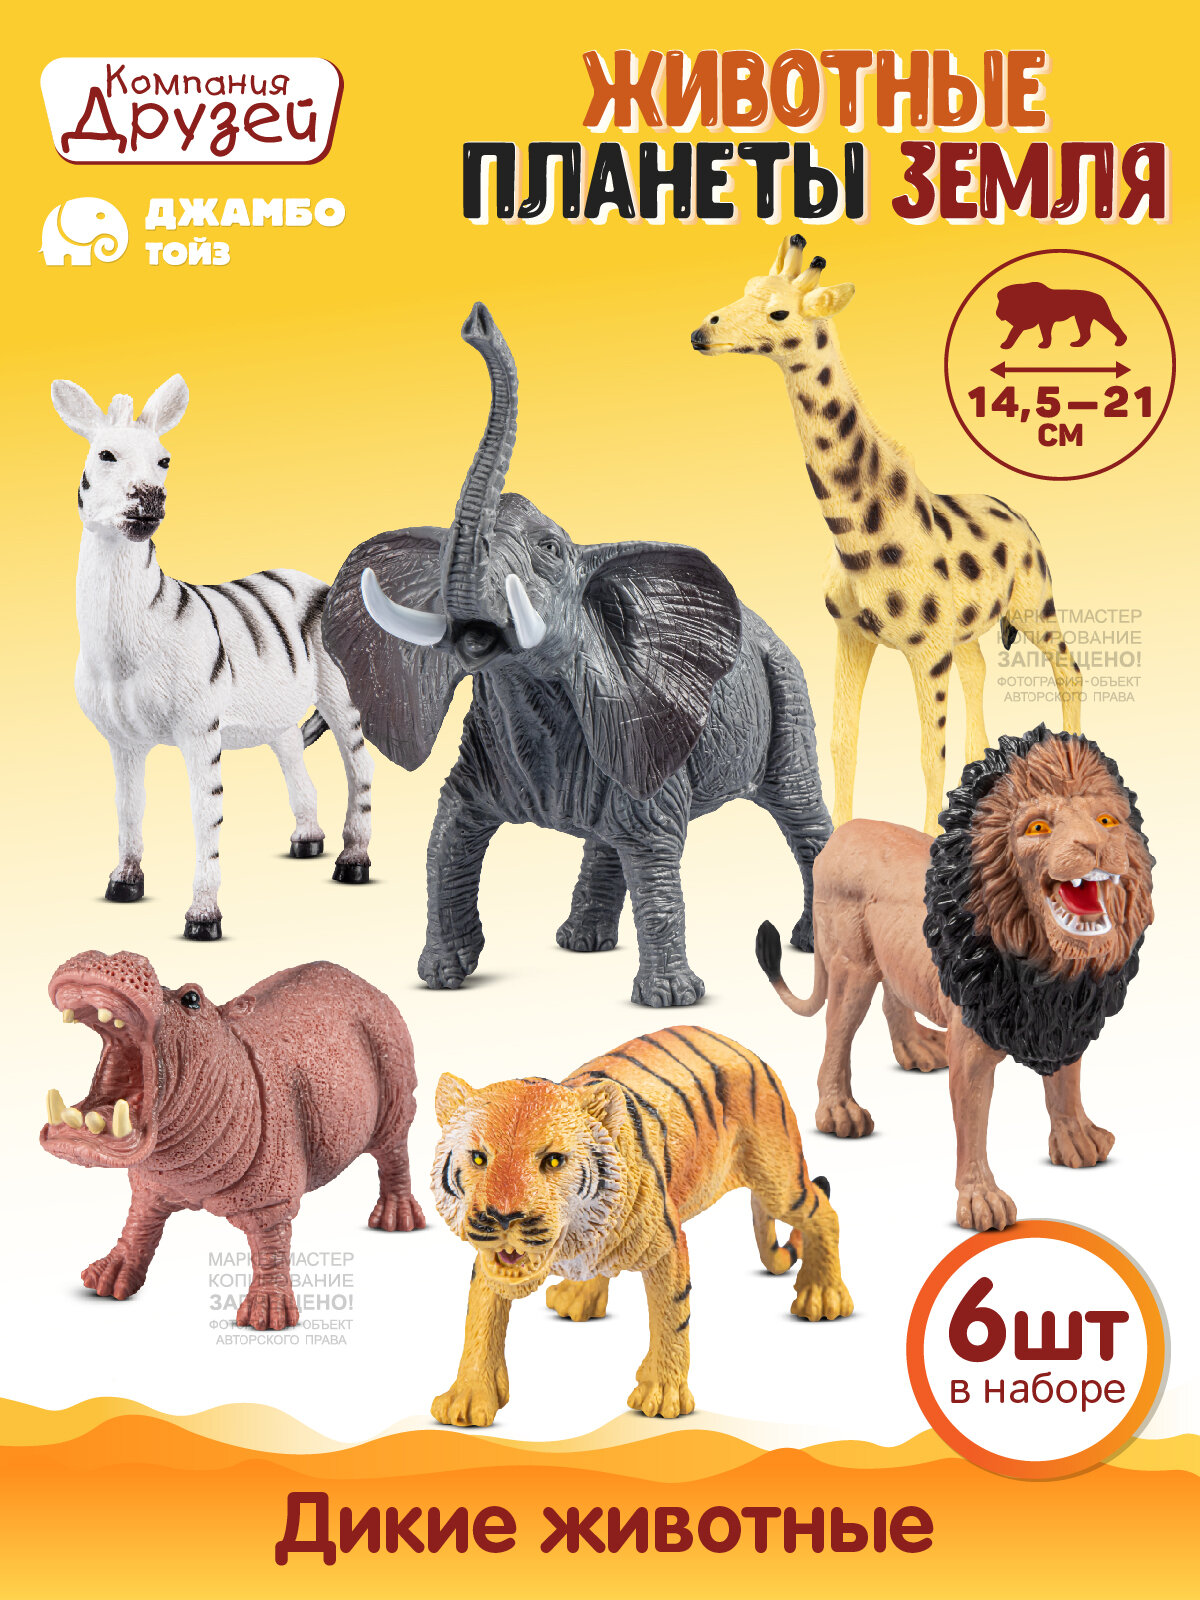 Игровой набор дикие животные ТМ компания друзей, серия "Животные планеты Земля", 6шт, JB0211743